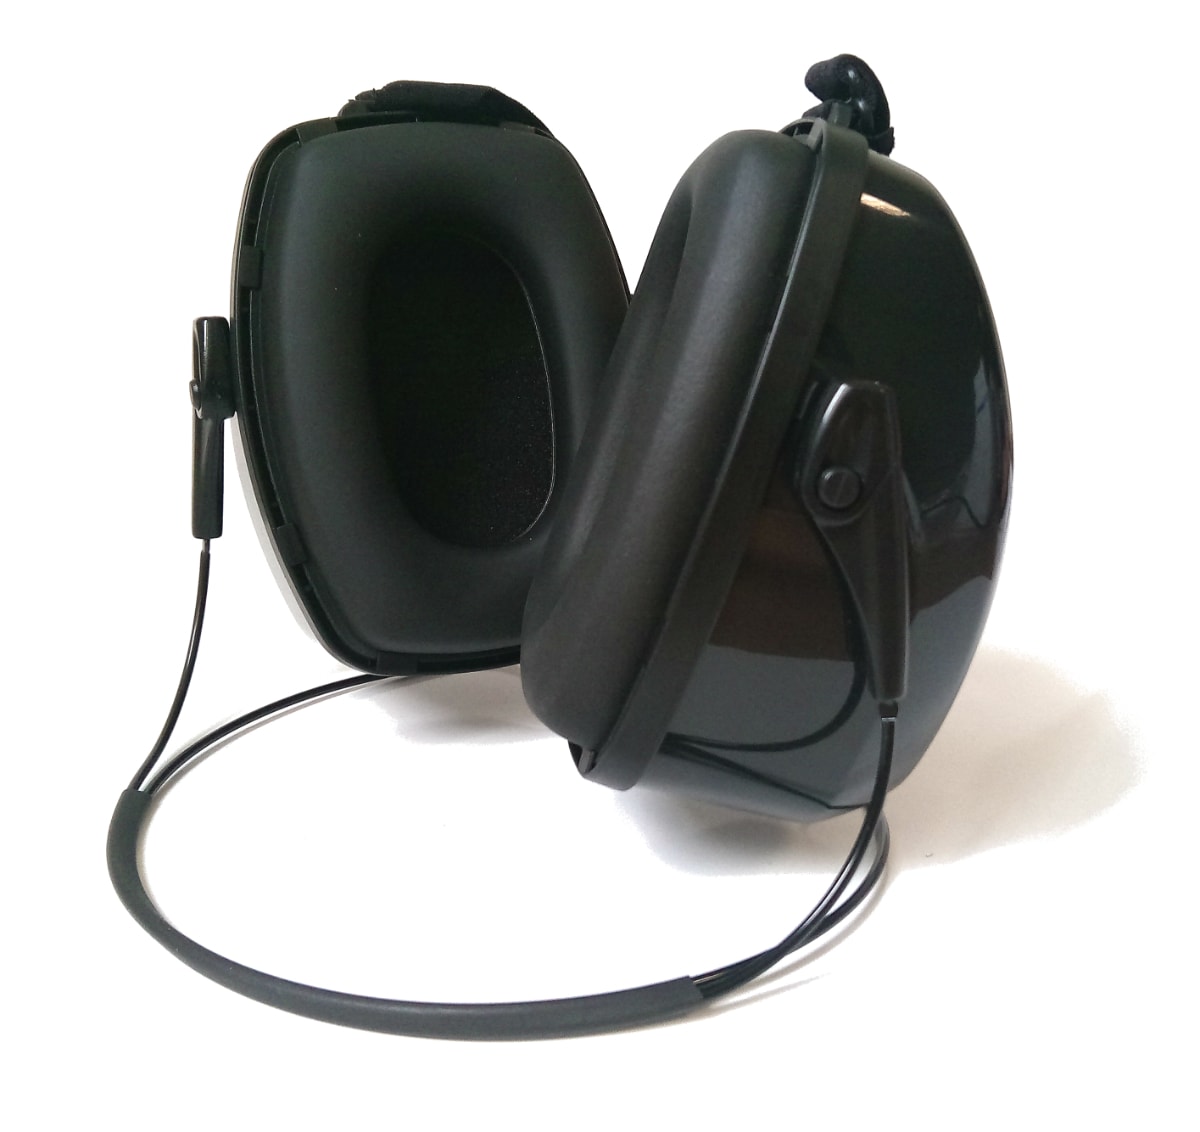 Bilsom Leightning L3N Neckband Ear Muffs SNR 32 dB